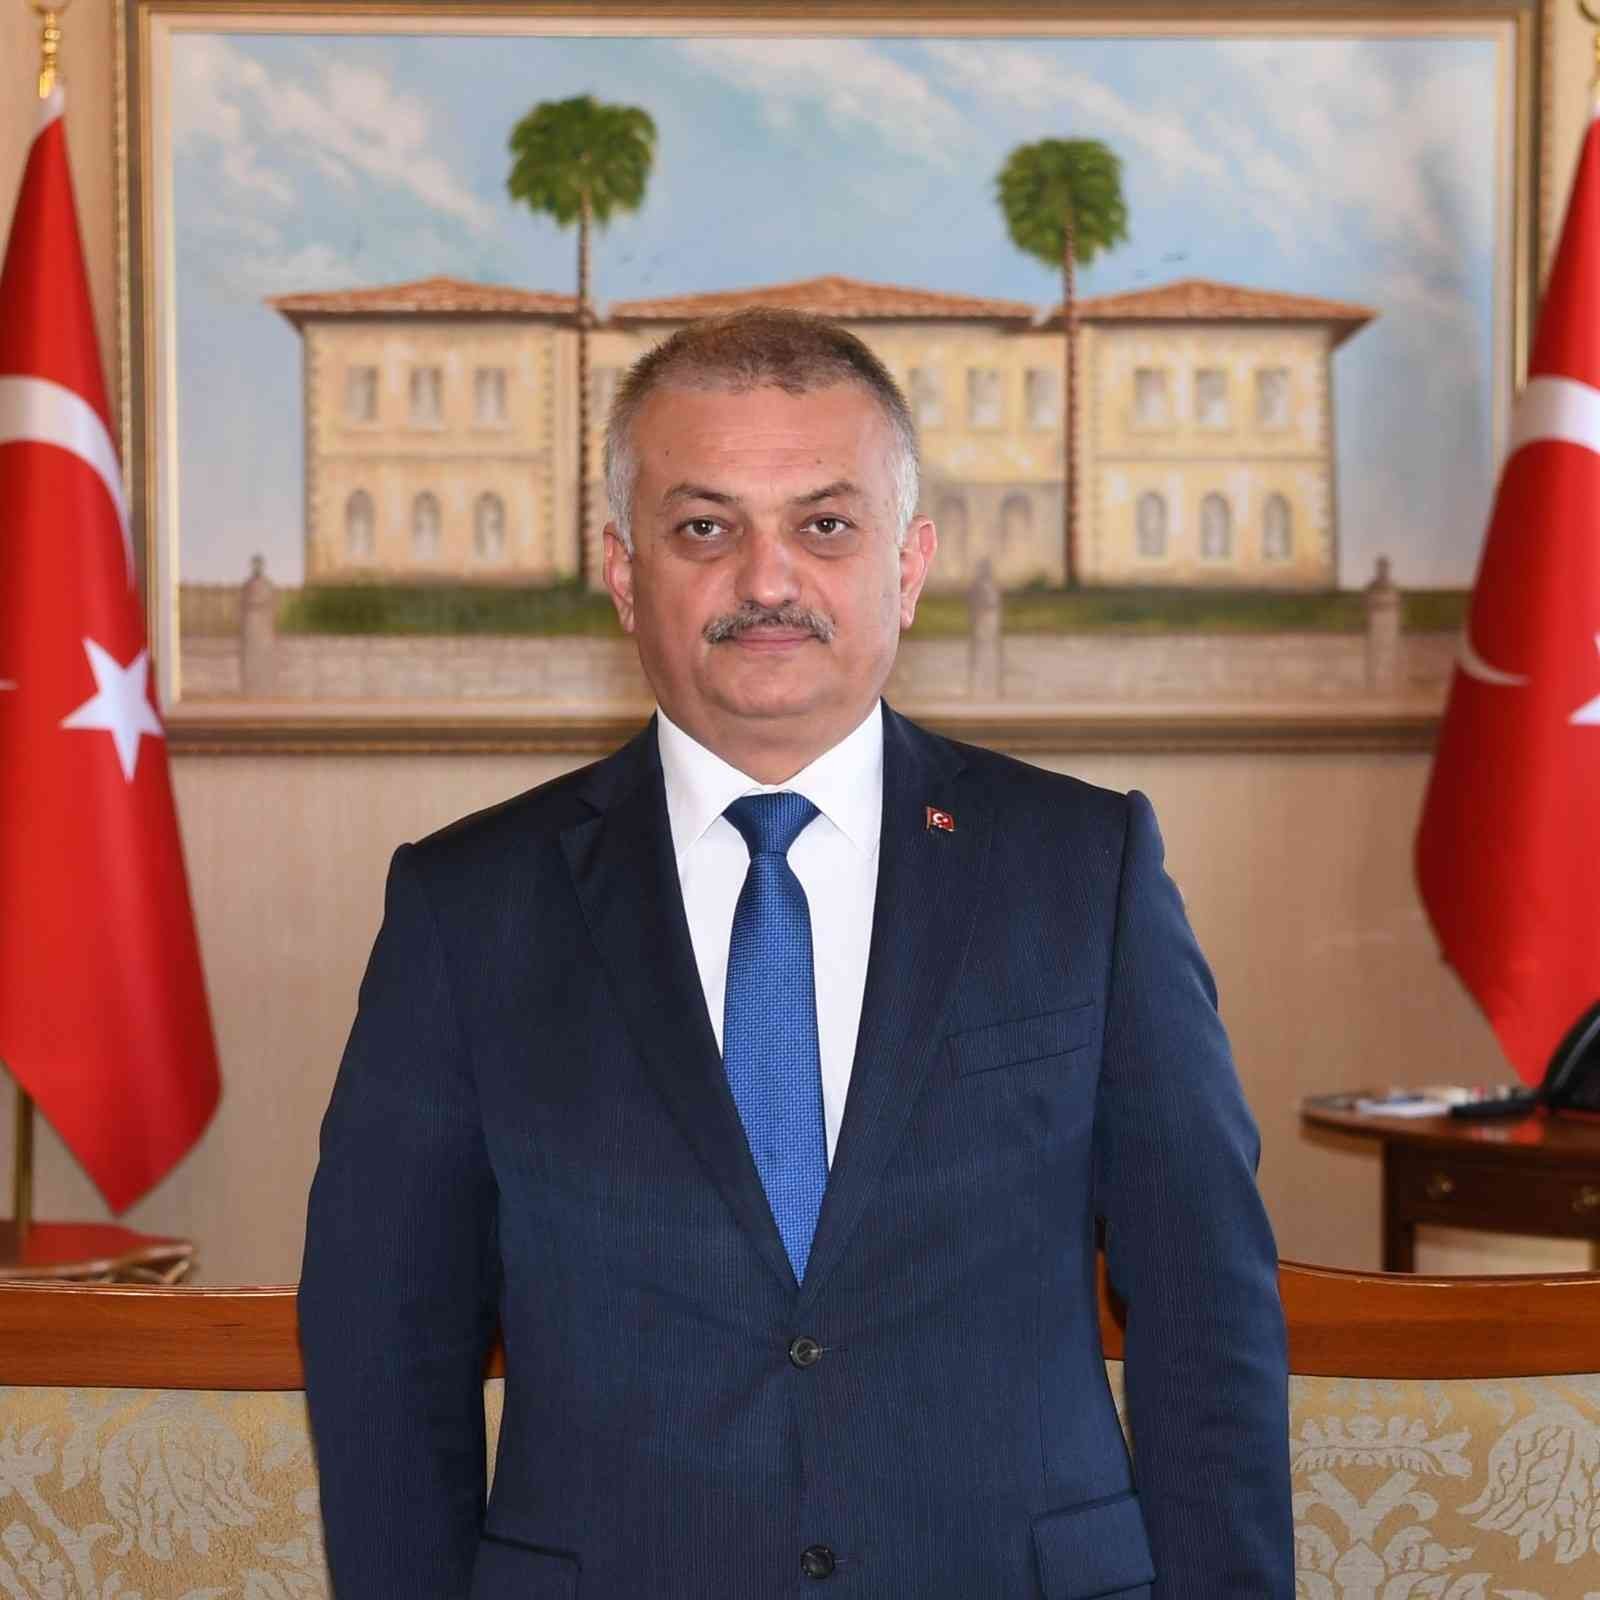 Vali Yazıcı: “Cumhuriyet, Türk Milletinin gücünün tüm dünyaya göstergesidir”